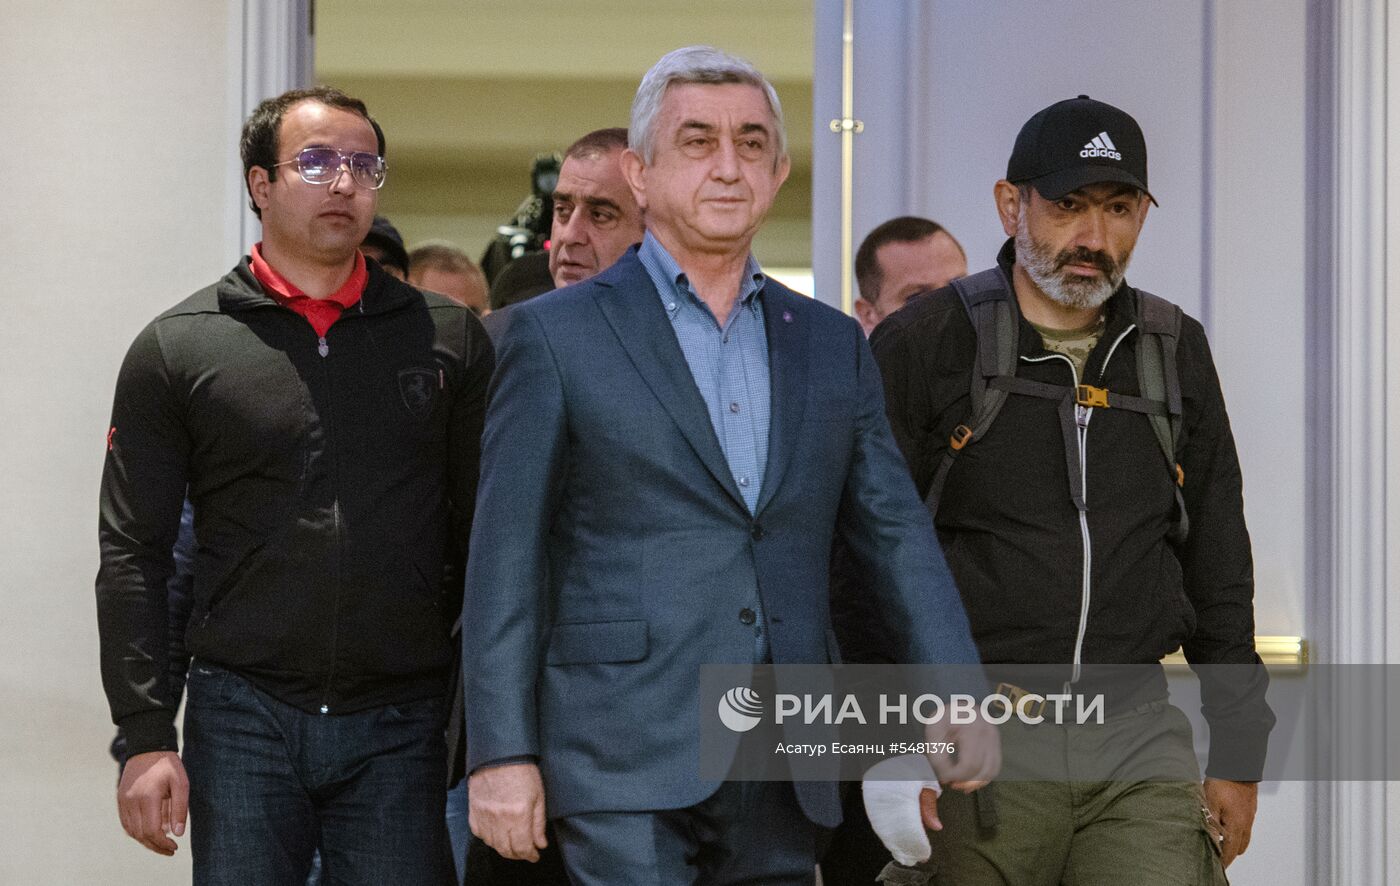 Встреча премьер-министр Армении С.Саргсяна и лидера оппозиции Н.Пашиняна